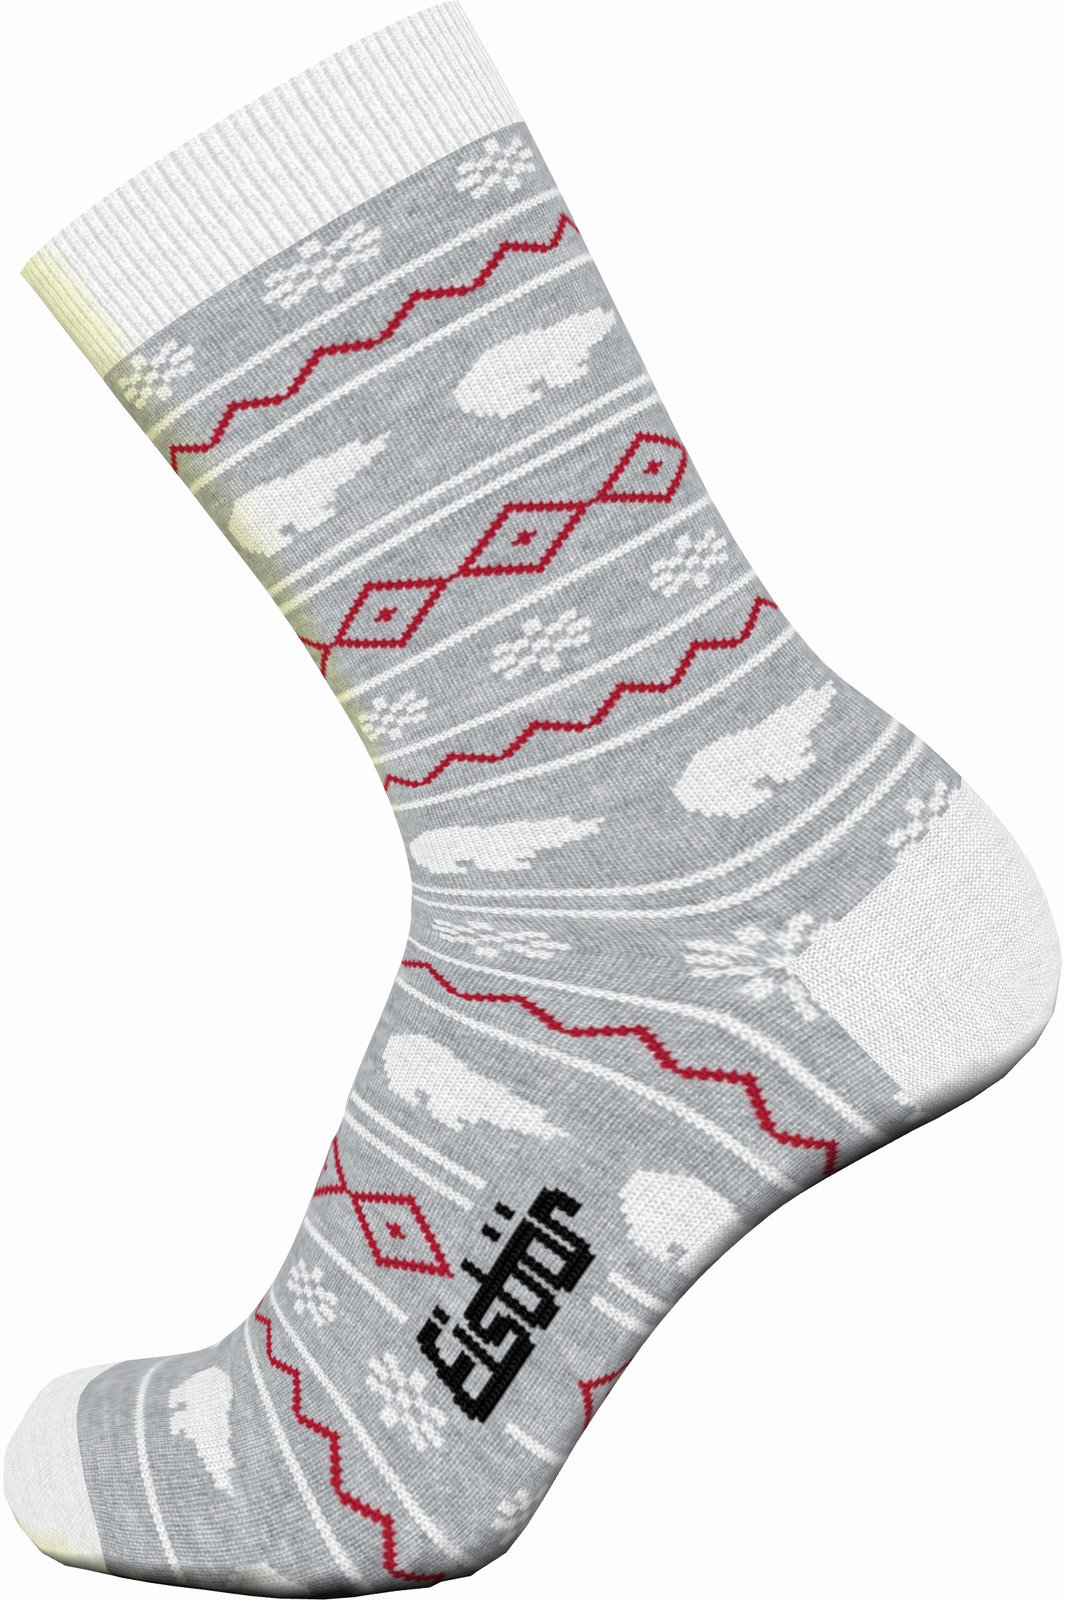 Ski Socks Eisbär Lifestyle Jacquard Red-Grey 27-30 Ski Socks (Just unboxed)